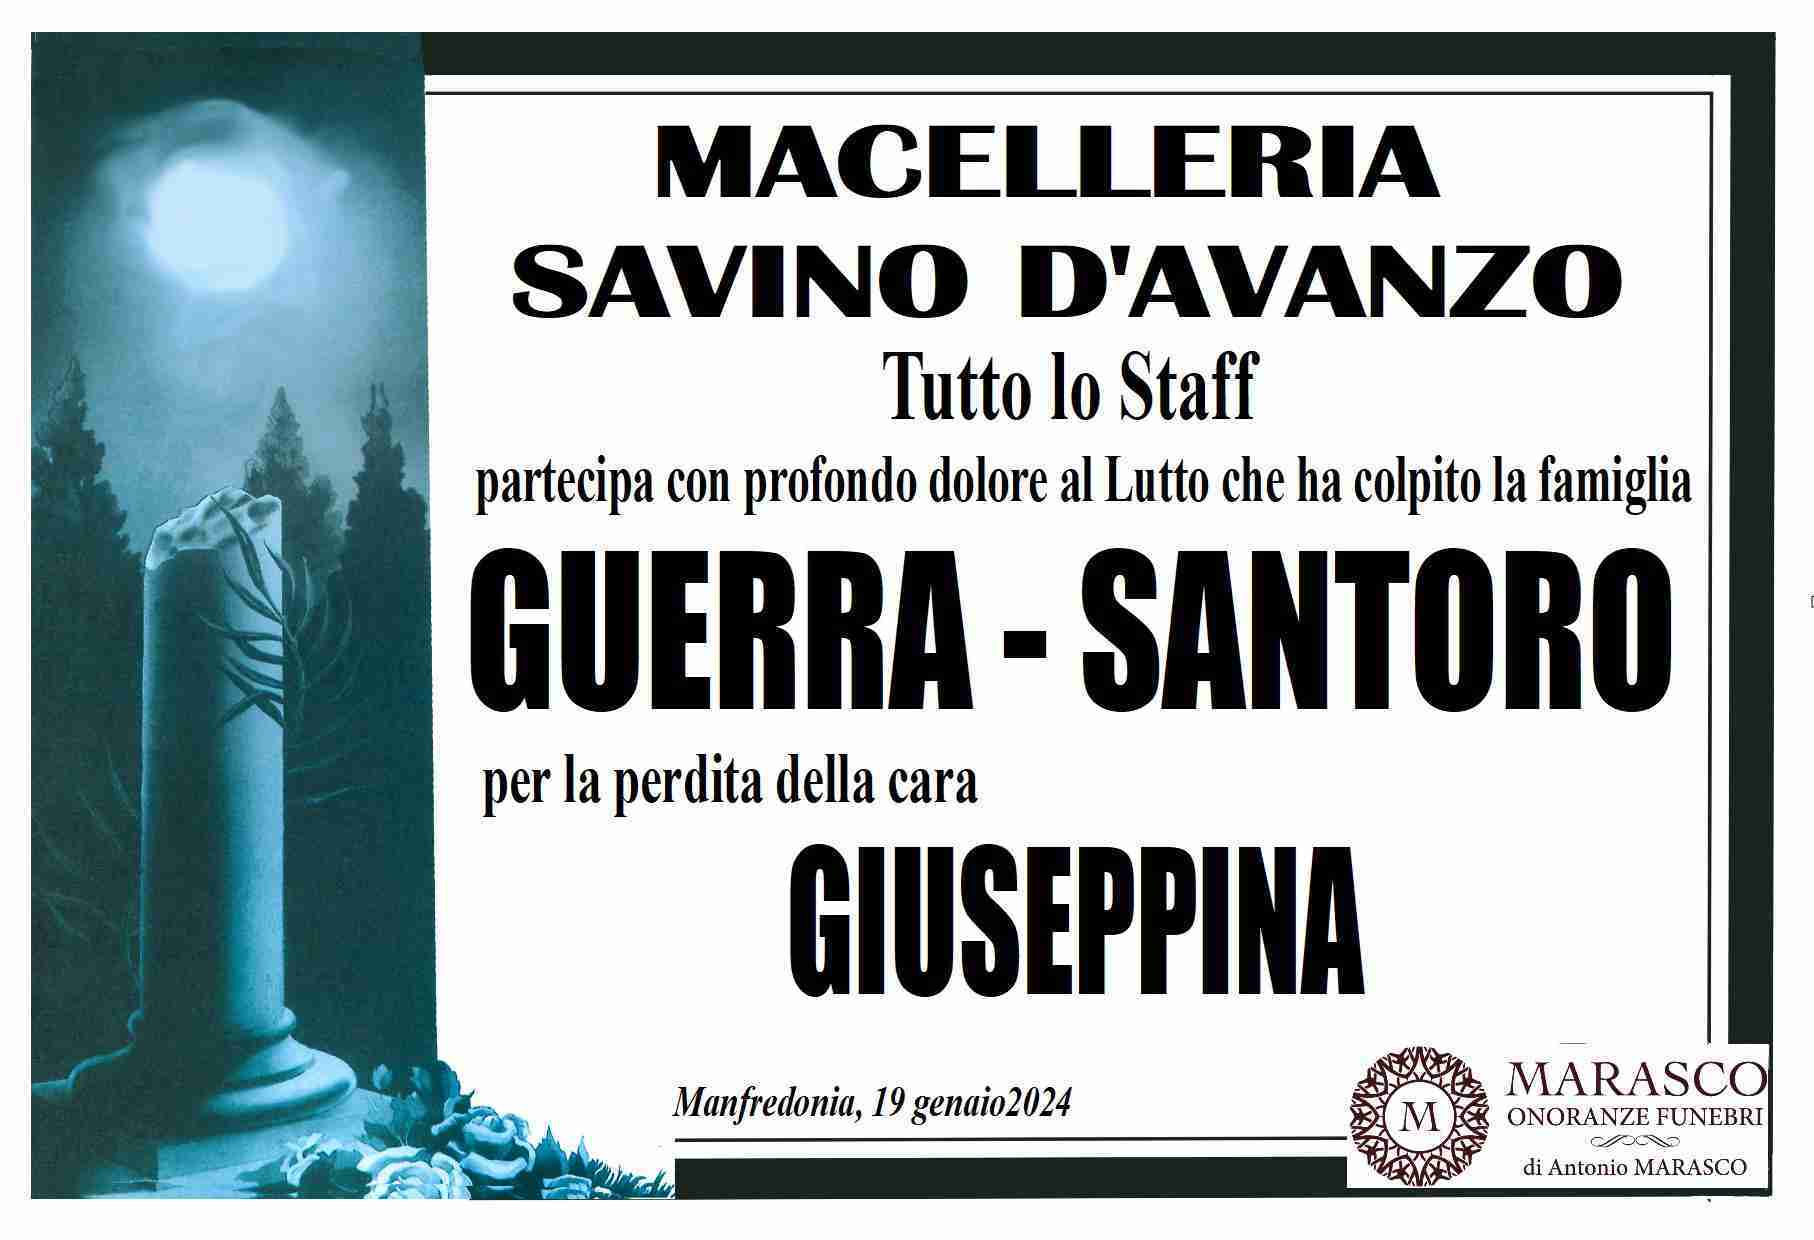 Giuseppina Santoro in Guerra